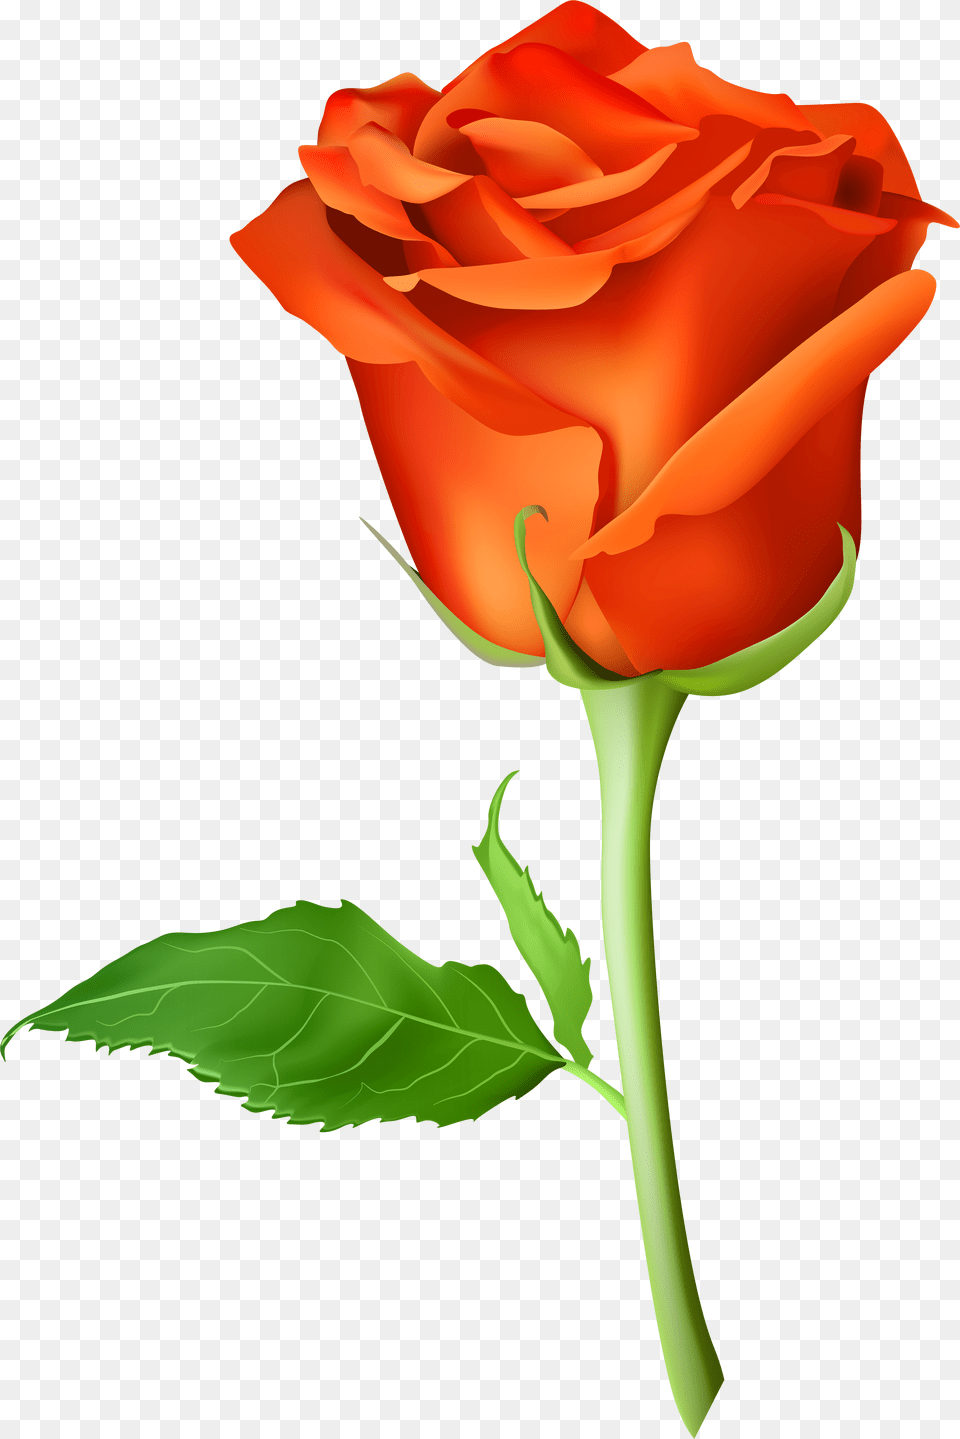 Rose Flower Images Download Orange Rose Free Transparent Png